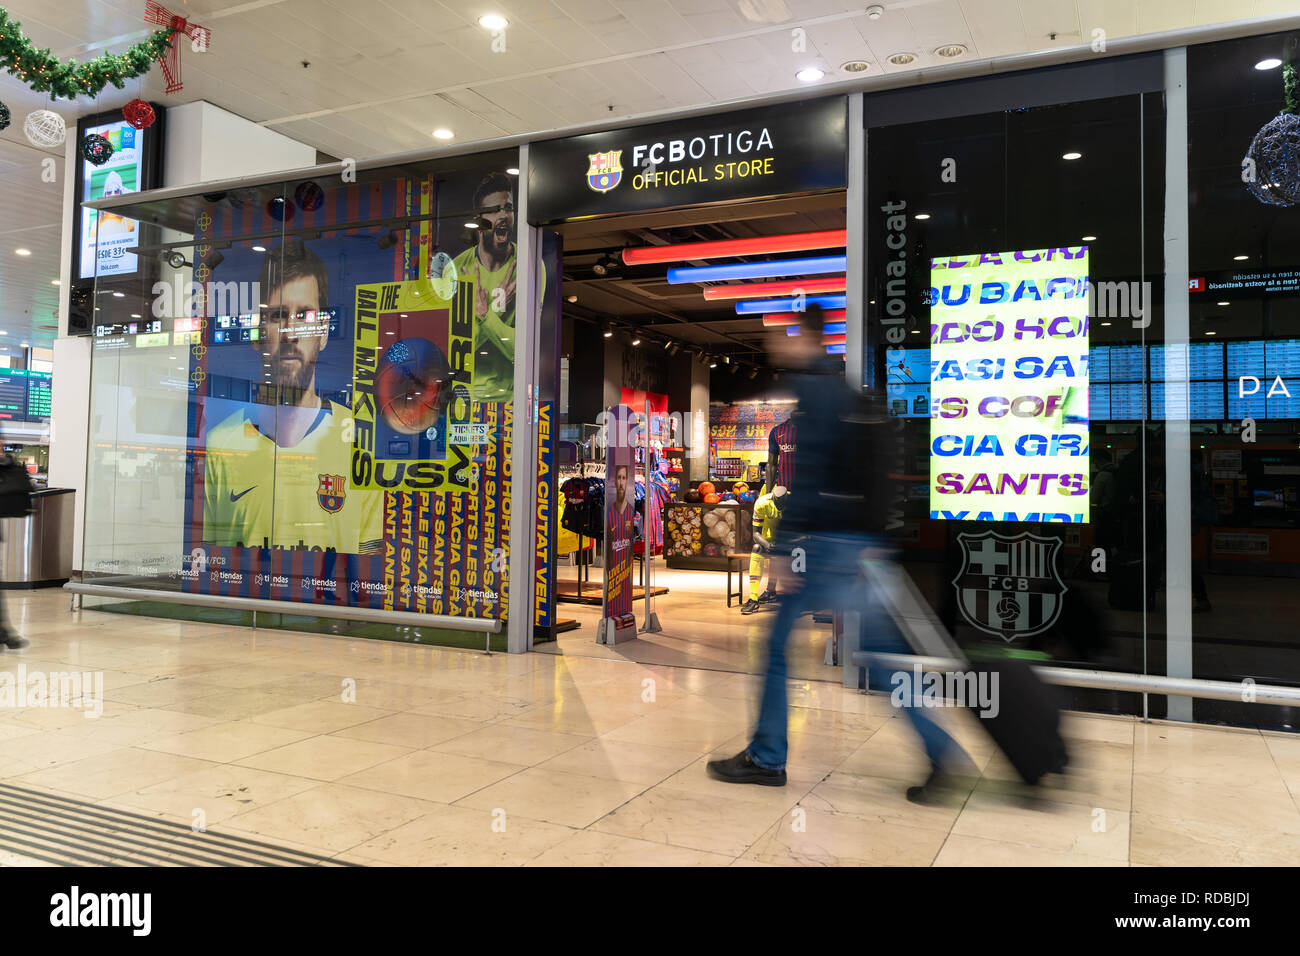 Entrée privée, façade à la botiga fc magasin de l'équipe de football du FC Barcelone avec une affiche par Lionel Messi dans la vitrine. Logo fc barcelone, ​​Spain Banque D'Images